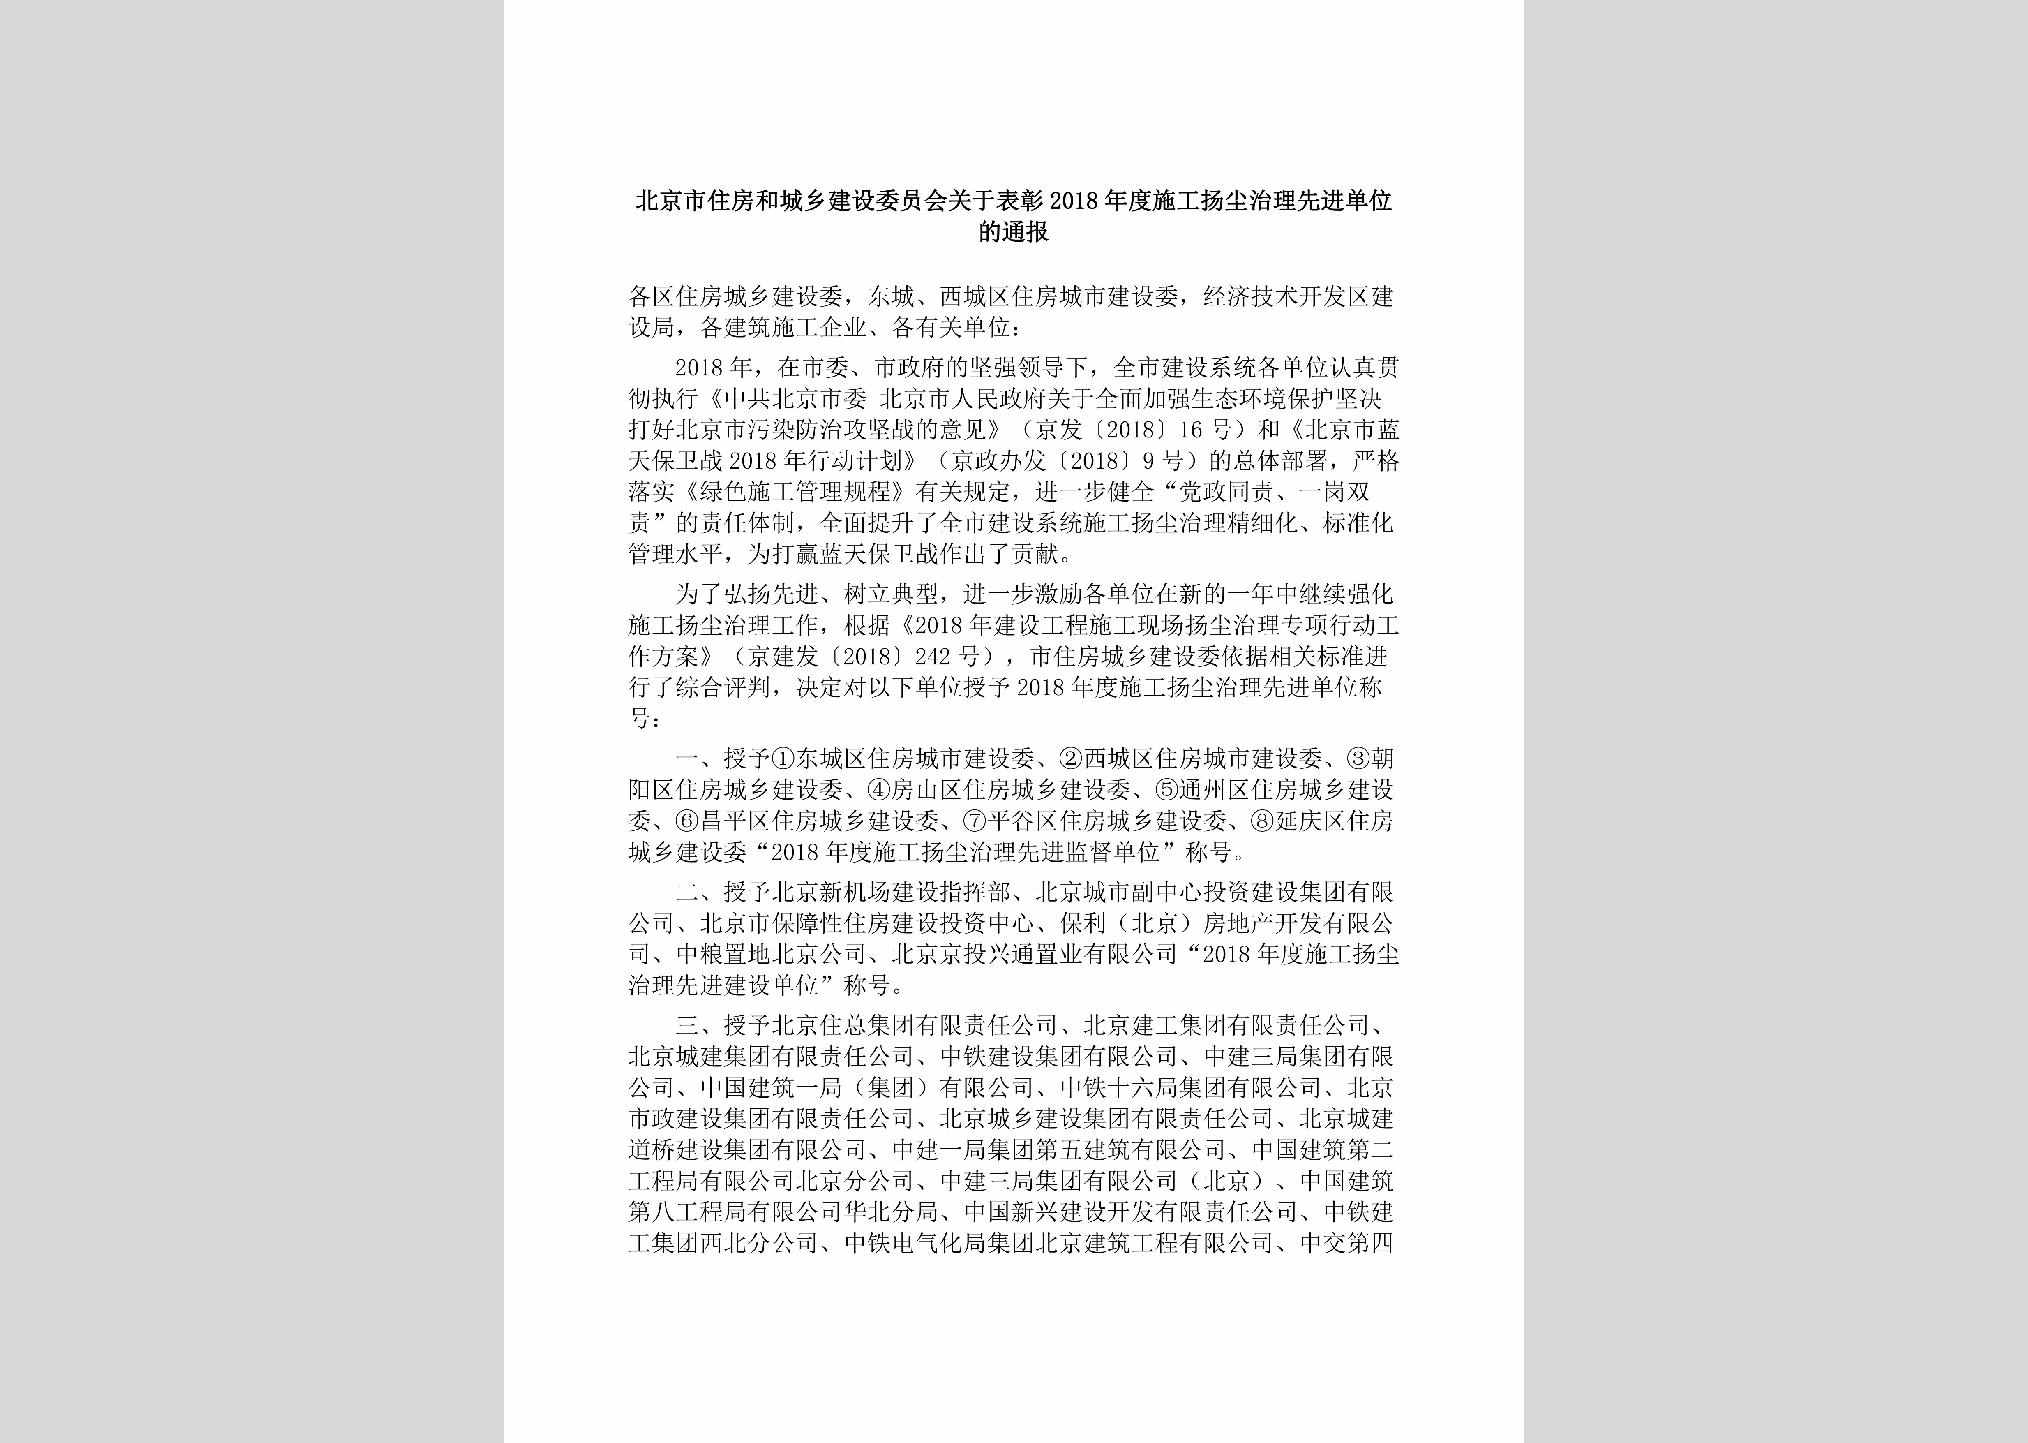 BJ-NDSGYCZL-2019：北京市住房和城乡建设委员会关于表彰2018年度施工扬尘治理先进单位的通报